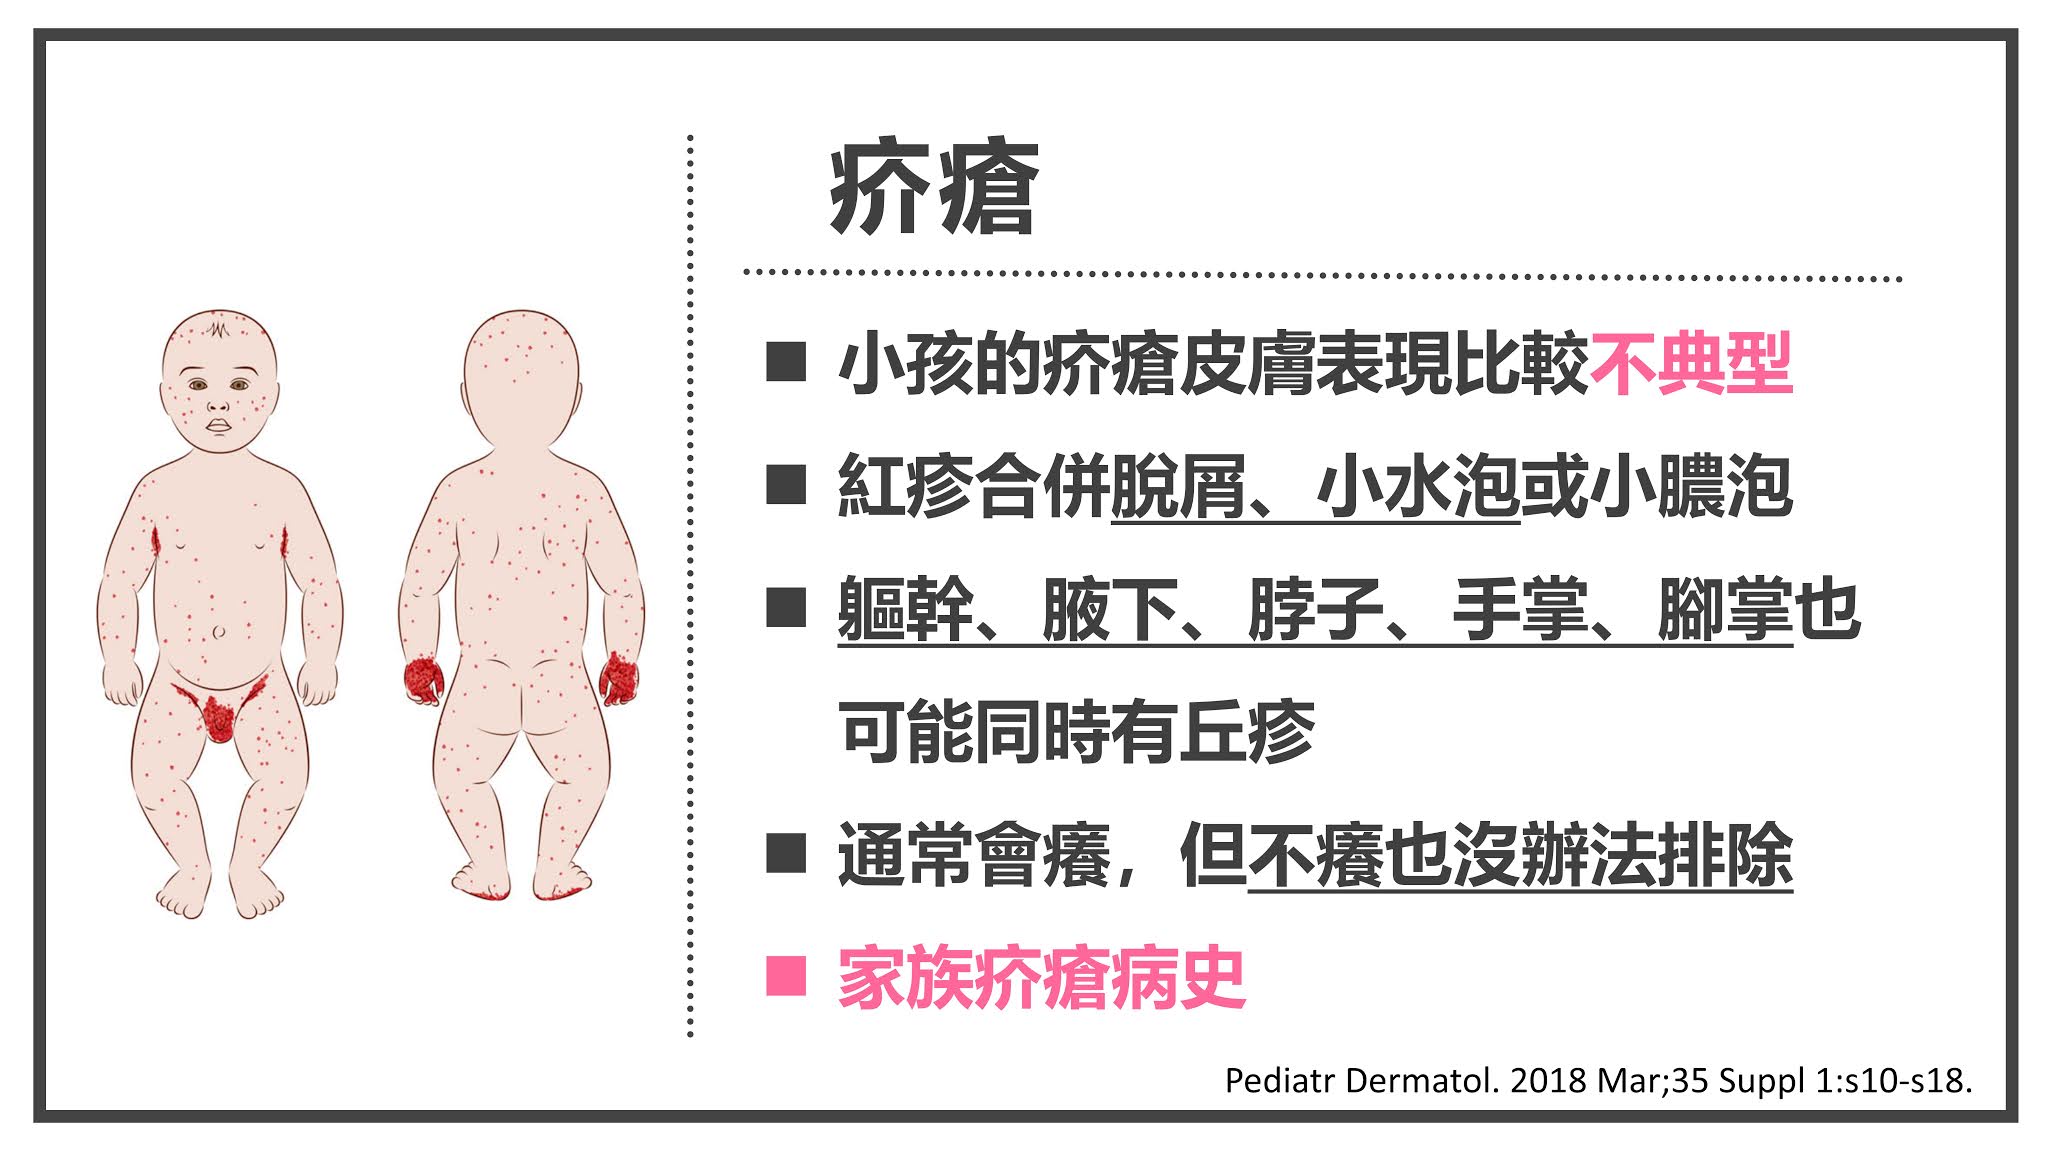 婴儿尿布（挑选宝宝尿布的方法）-幼儿百科-魔术铺